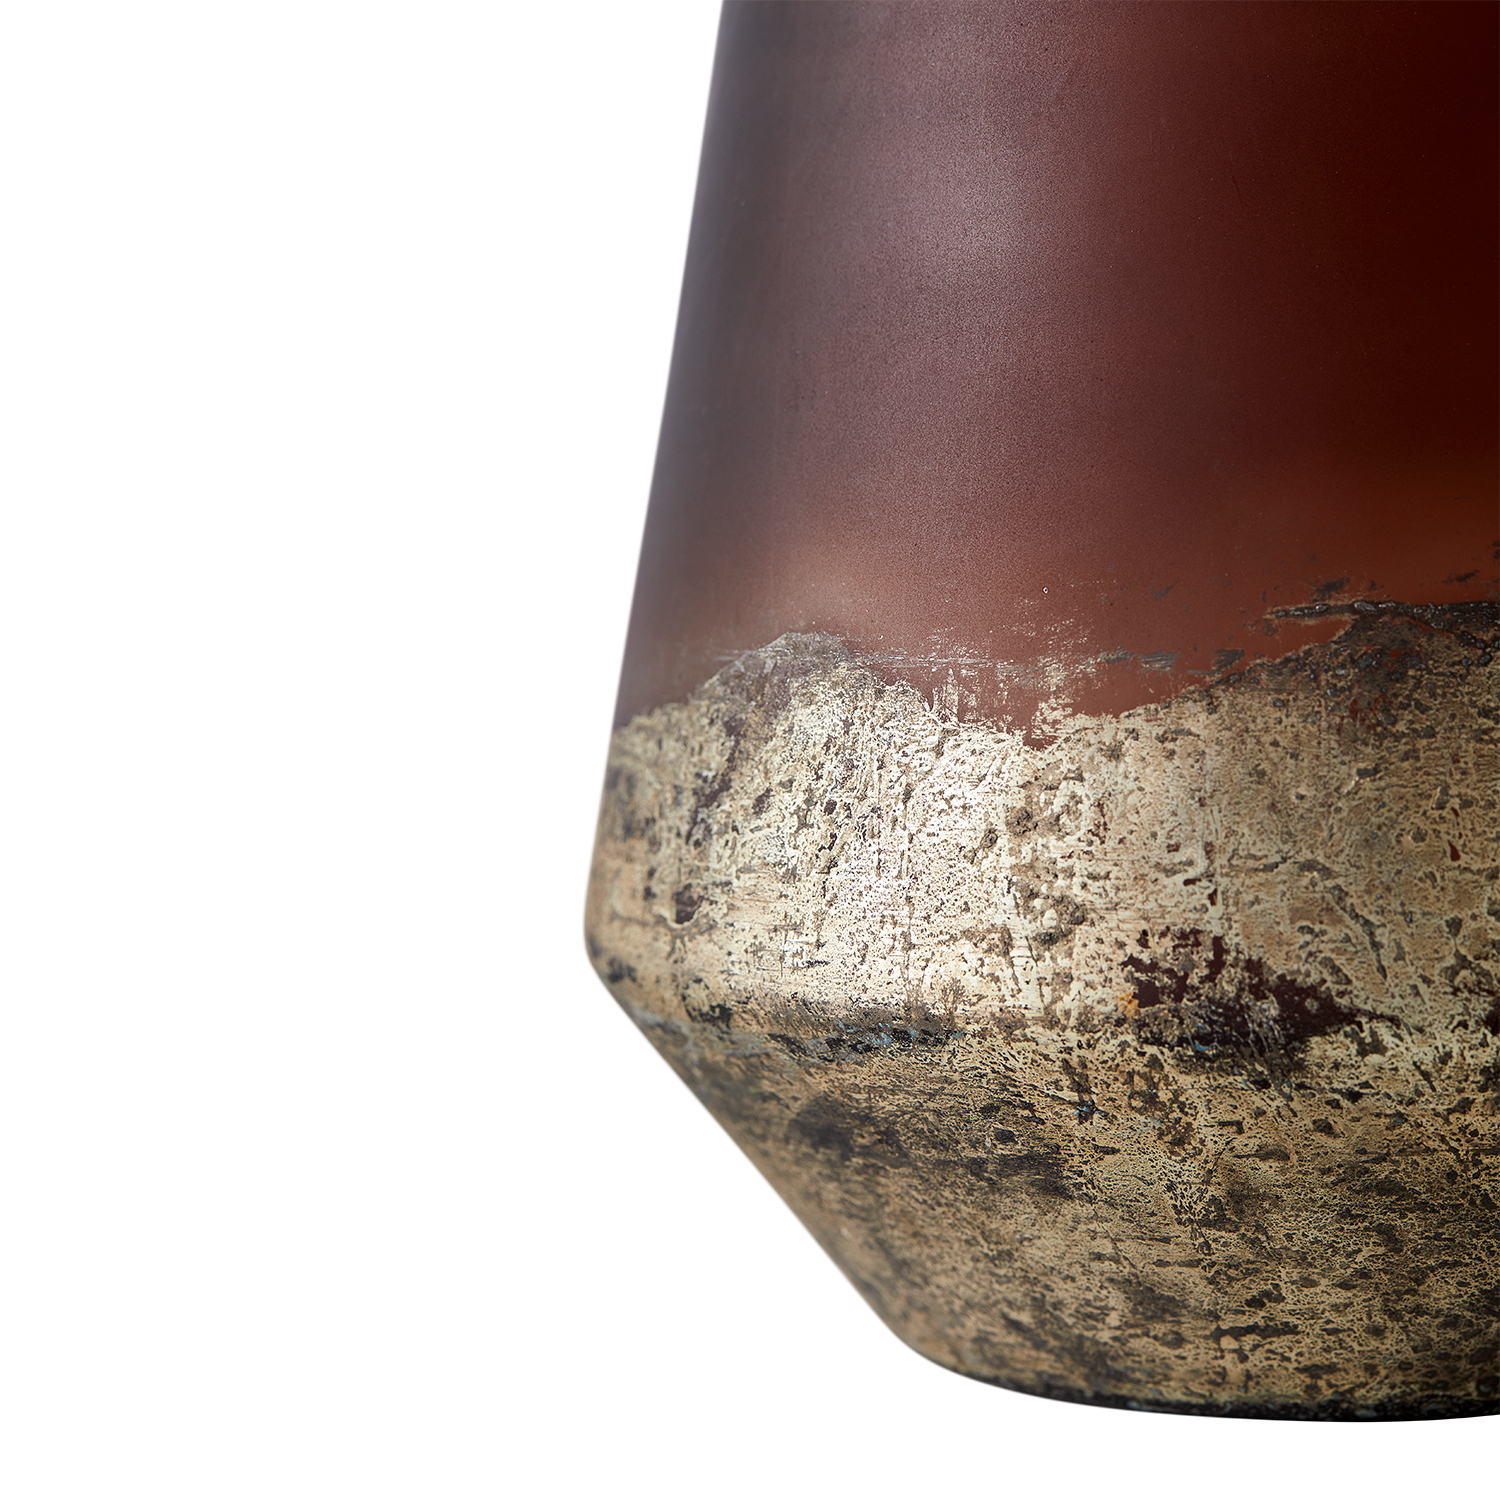 Vase Lana 26 - Brown/Gold Ø18xH26 cm